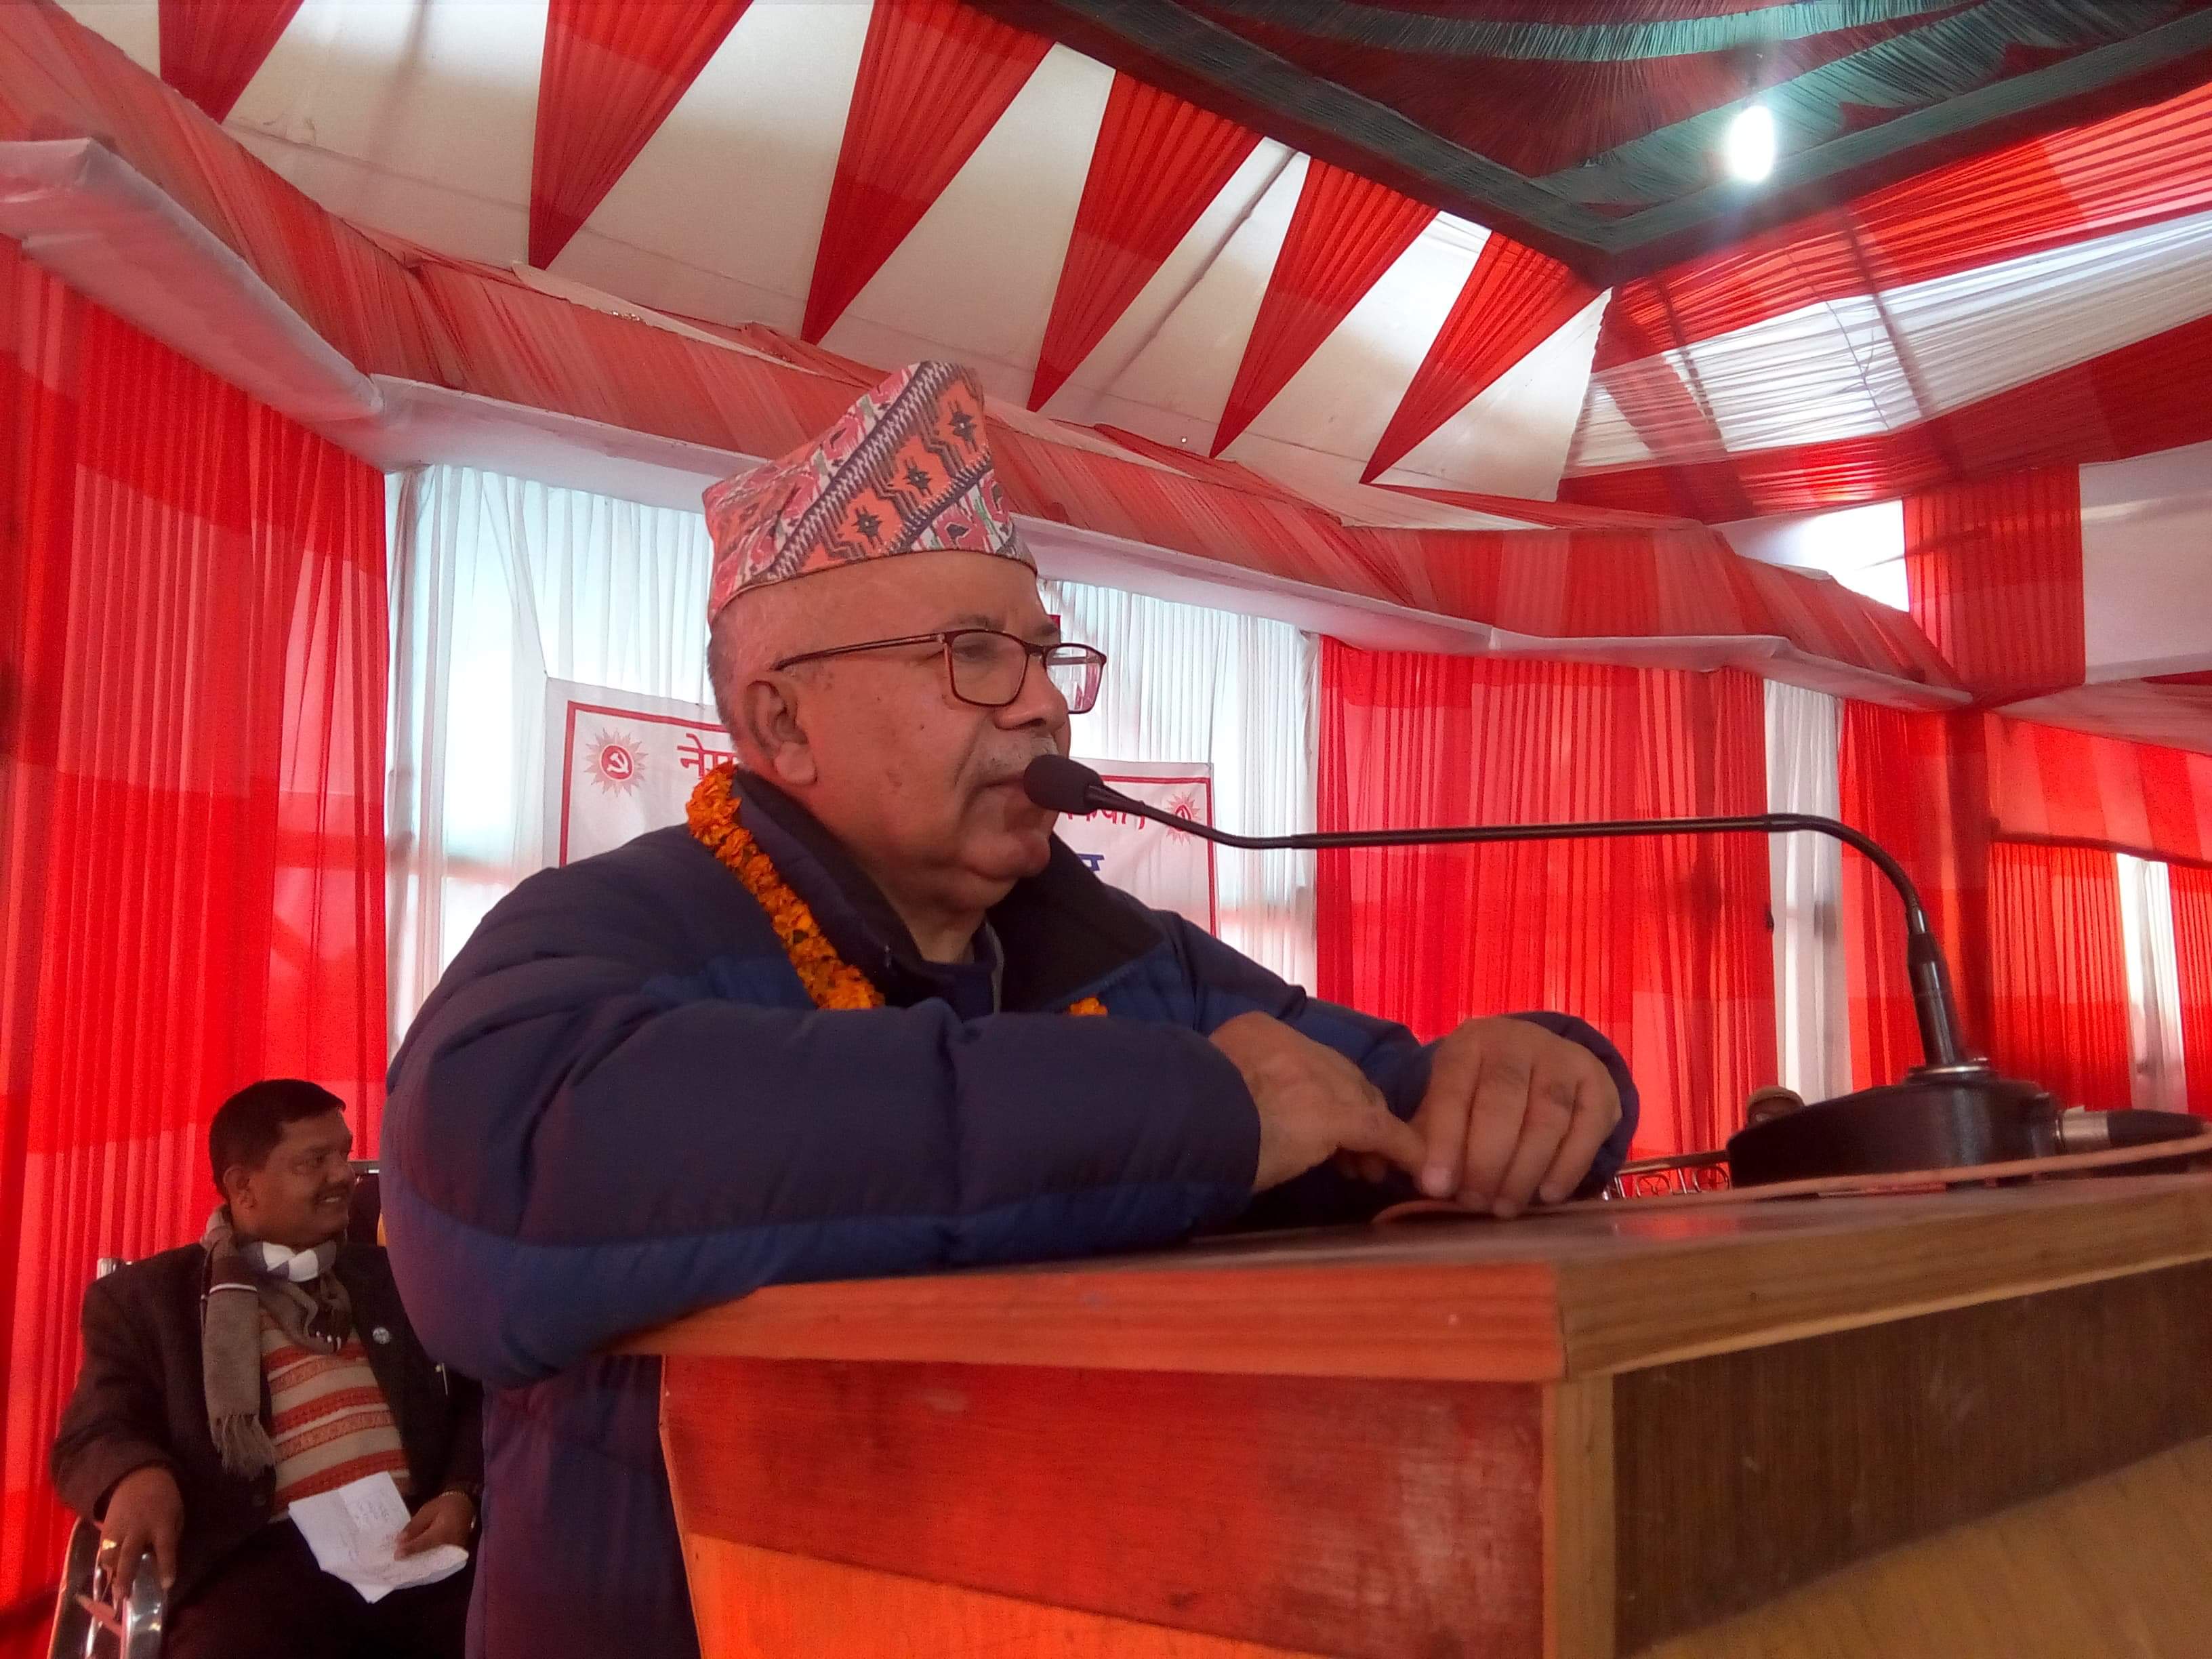 काँग्रेस सरकारको लोकप्रियता देख्न नसकेर दुष्प्रचारमा लाग्योः माधव नेपाल